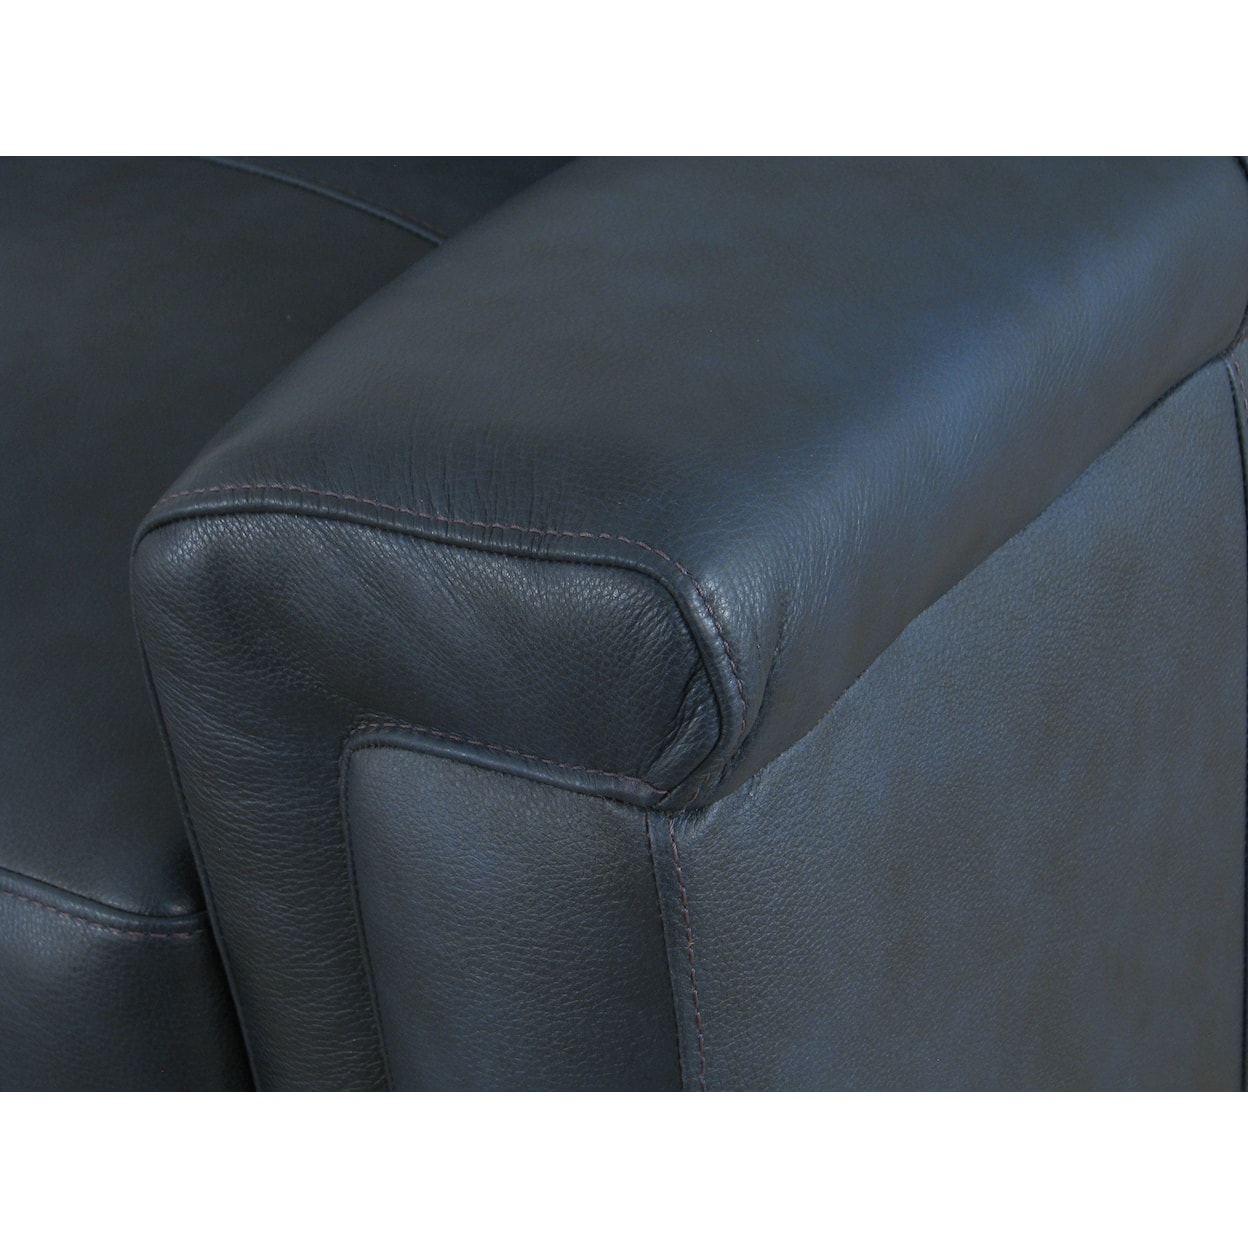 Virginia Furniture Market Premium Leather 7097 Sofa